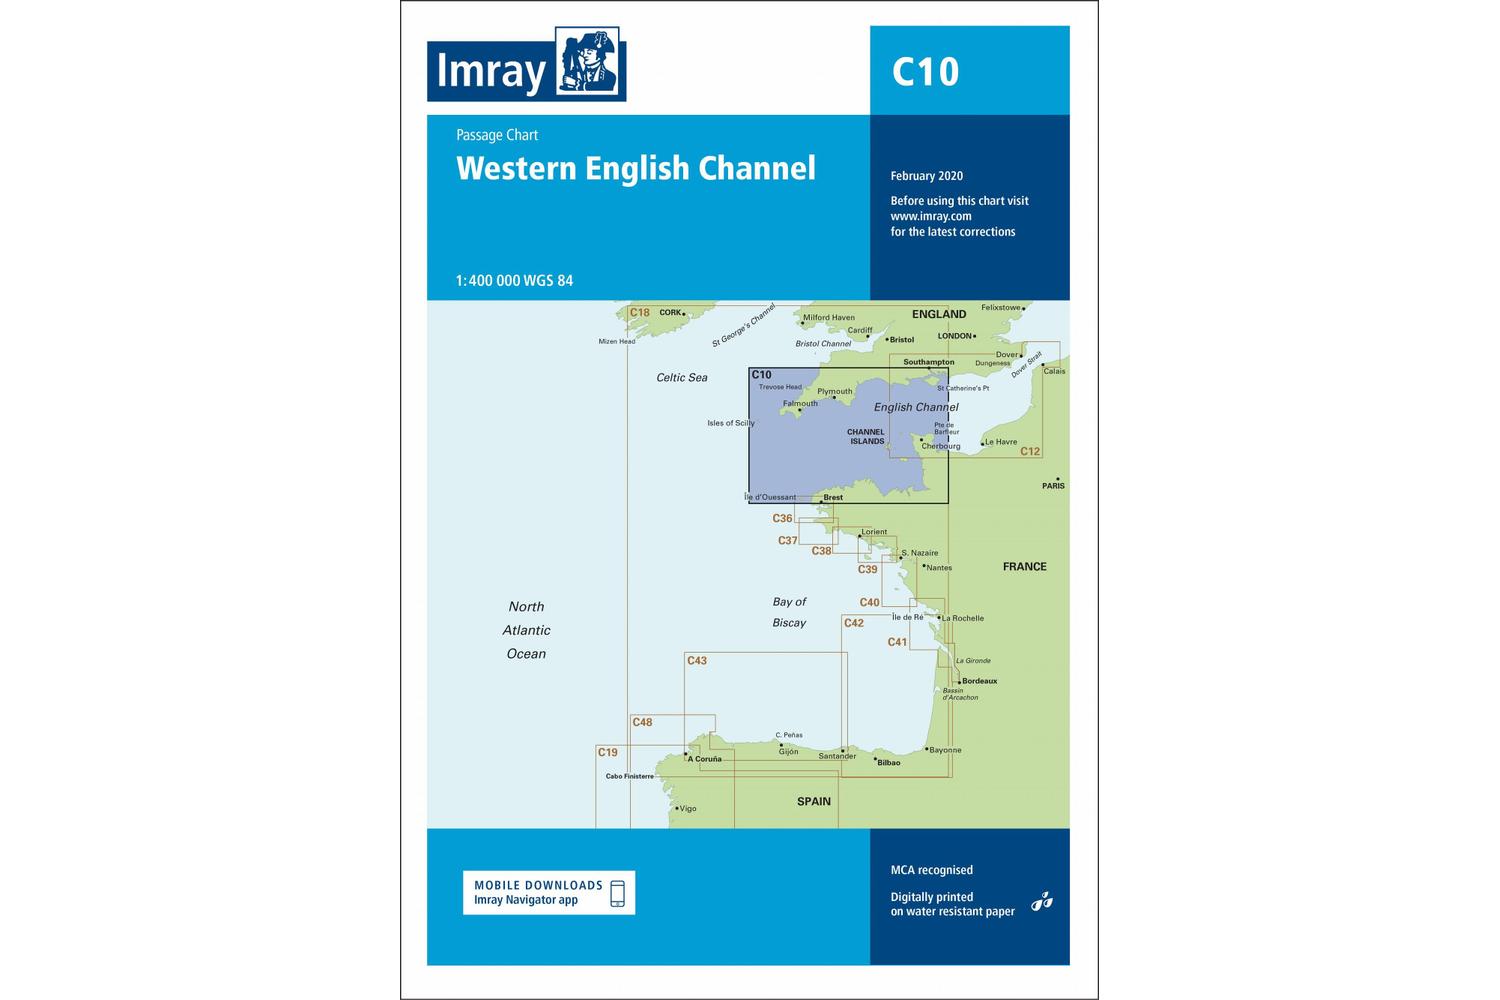 Imray - C10 Western English Channel Passage Chart